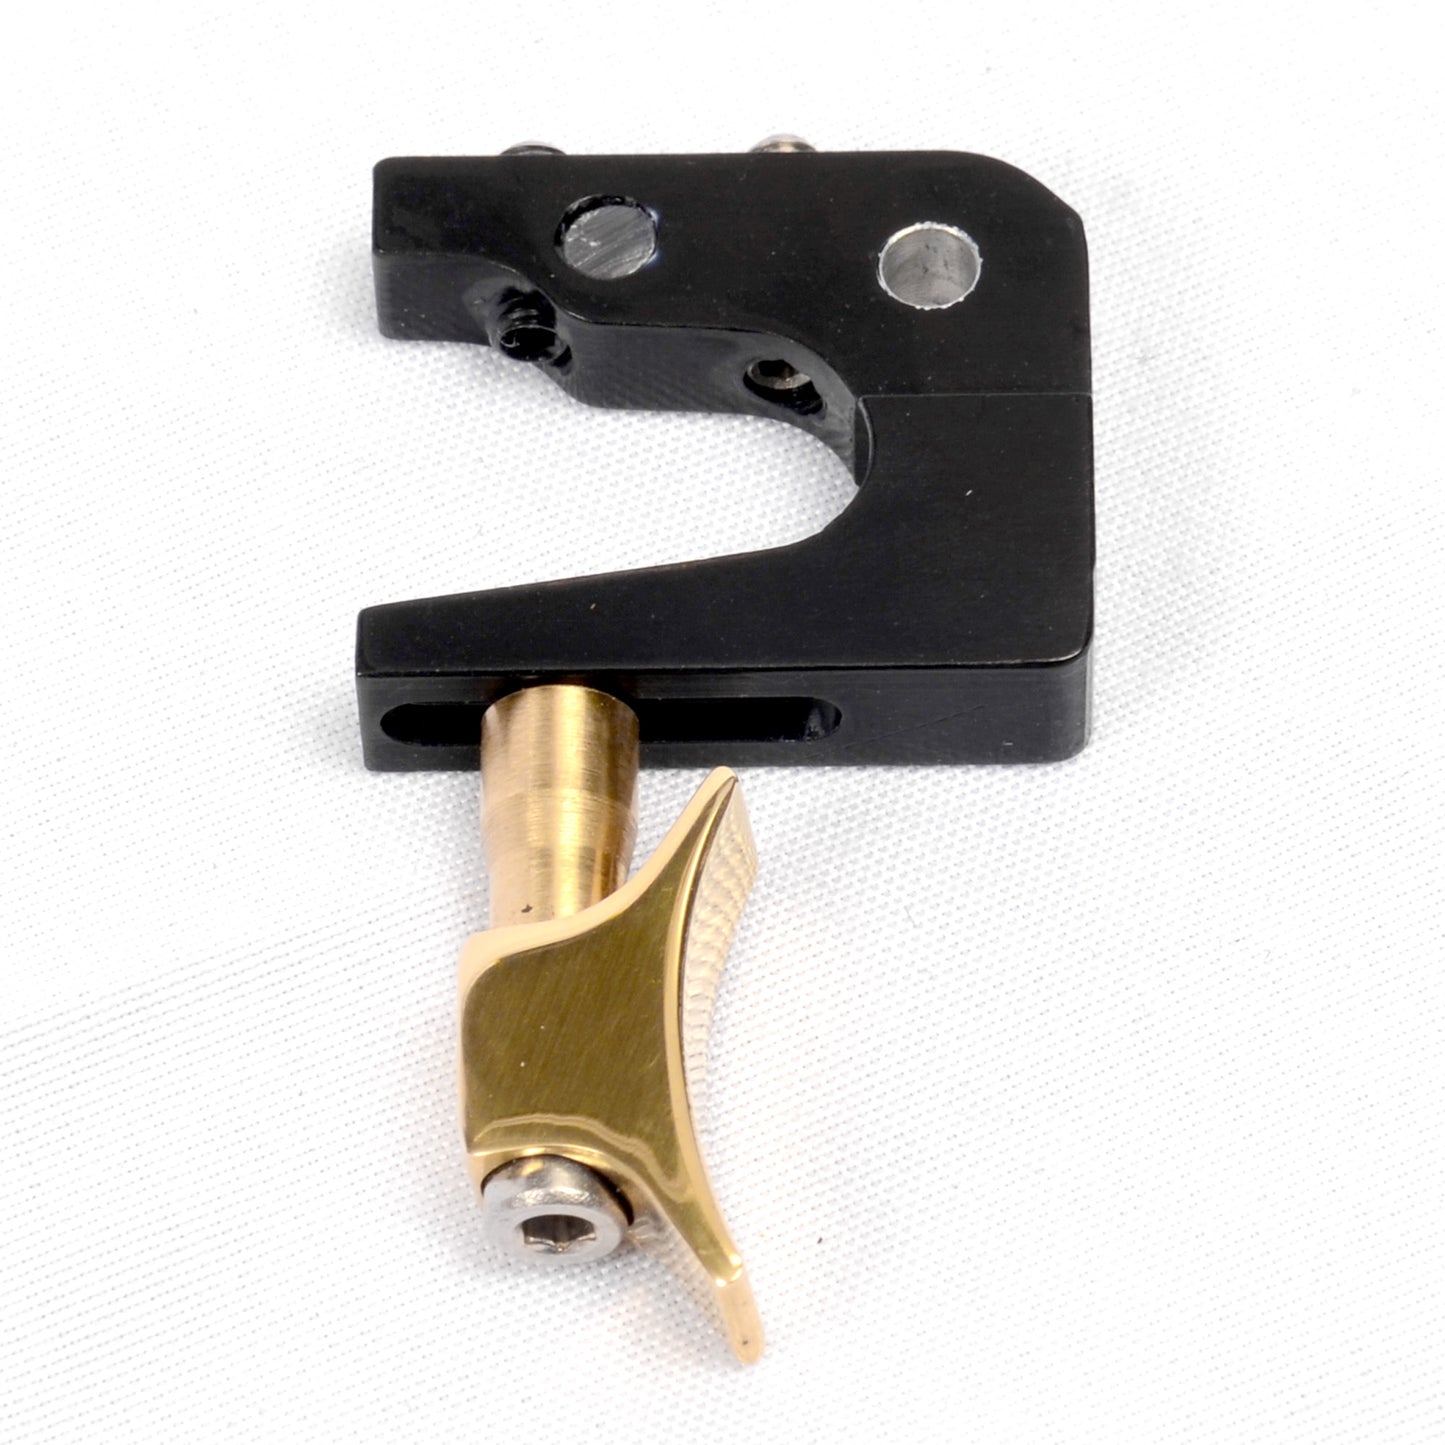 Theoben MK4 Adjustable Trigger. 1/8" pin